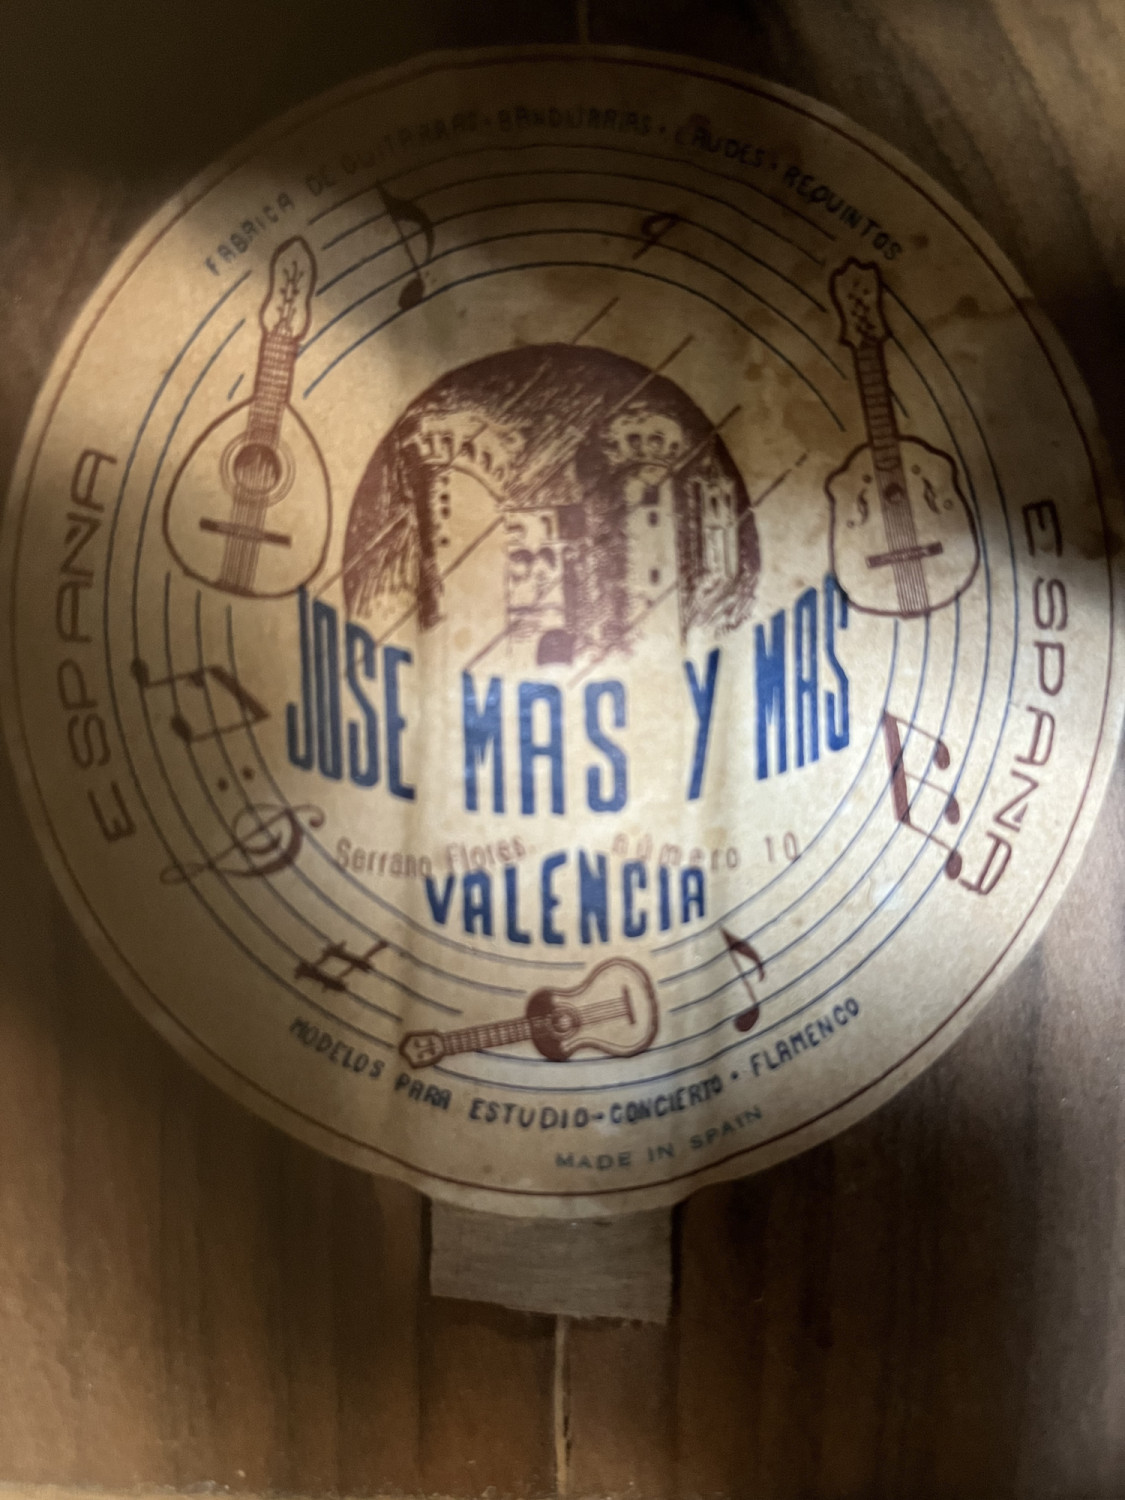 1956 JOSE MAS Y MAS label